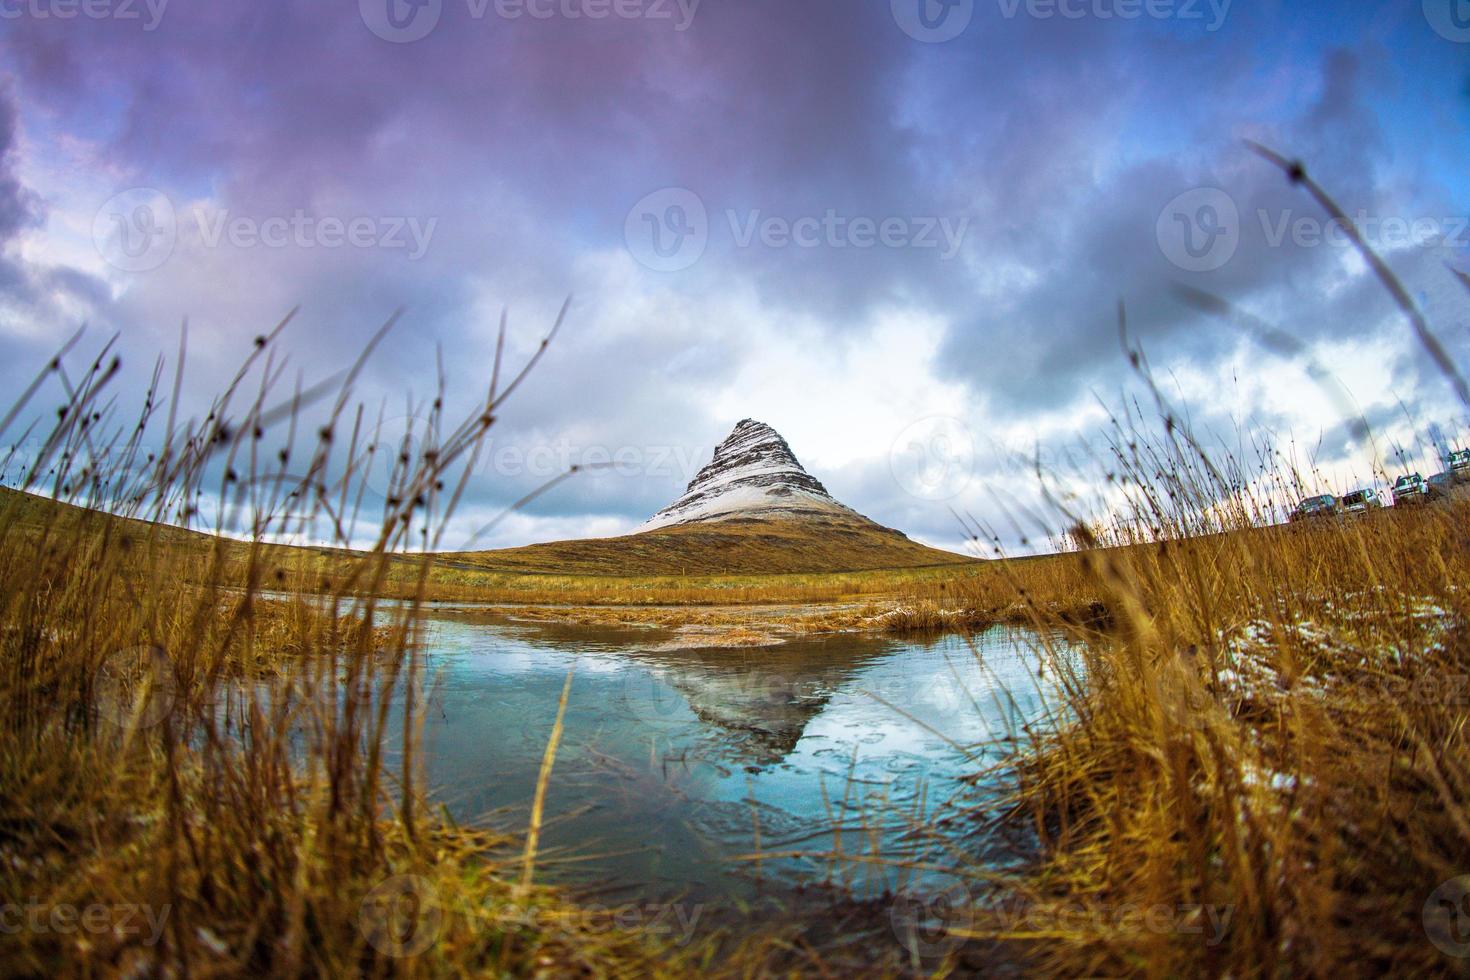 kirkjufell, montanha da igreja em islandês, uma montanha de 463 m de altura na costa norte da península de snaefellsnes da islândia, perto da cidade de grundarfjordur, islândia foto